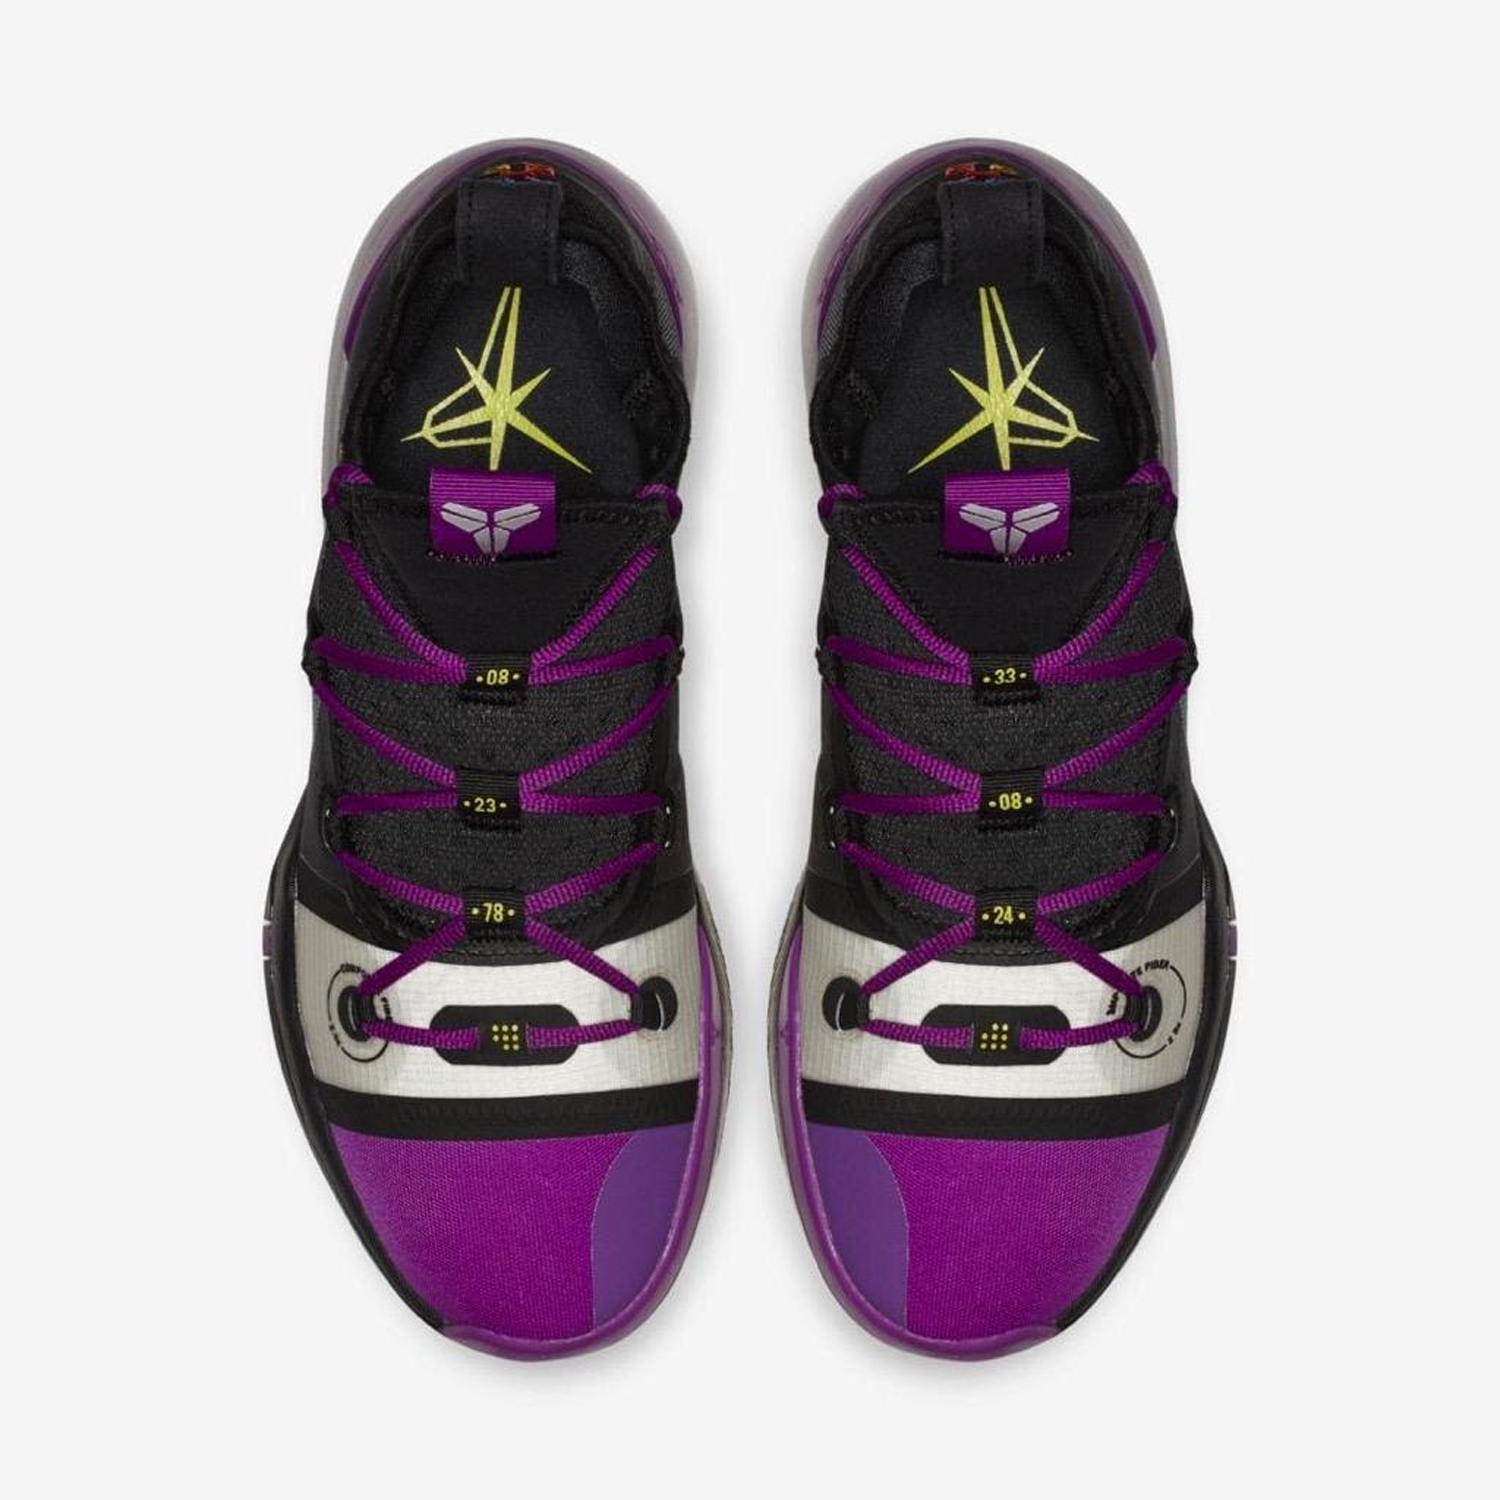 Nike-Kobe-AD-Exodus-Black-Purple-2 